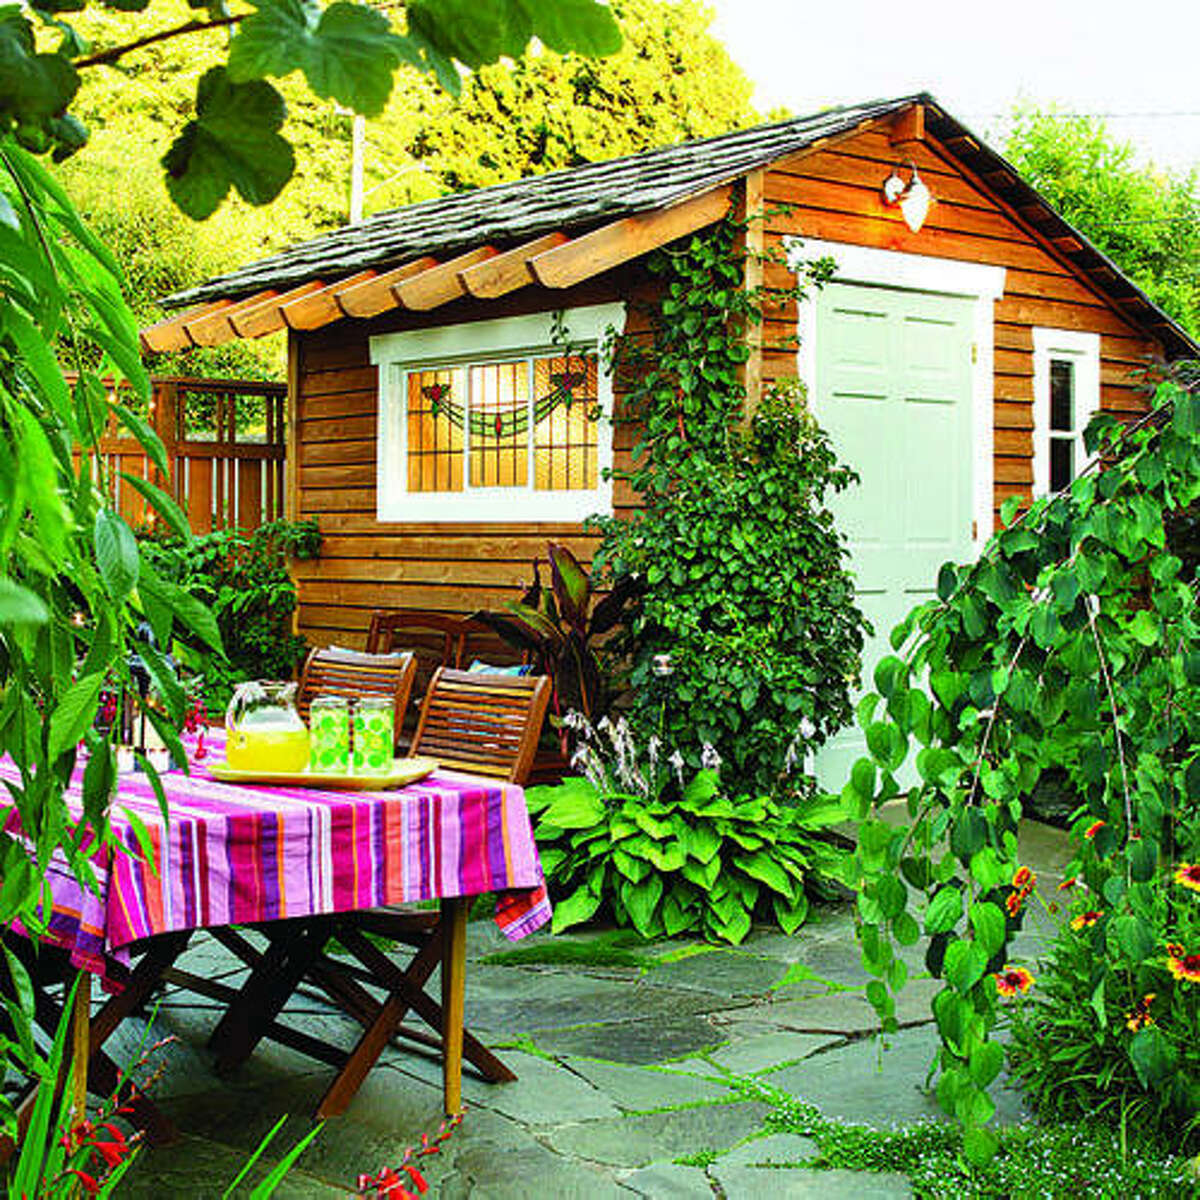 Снять дом в деревне на лето недорого. Дача Лунберга. Красивая дача. Маленький домик в саду. Красивый летний домик.